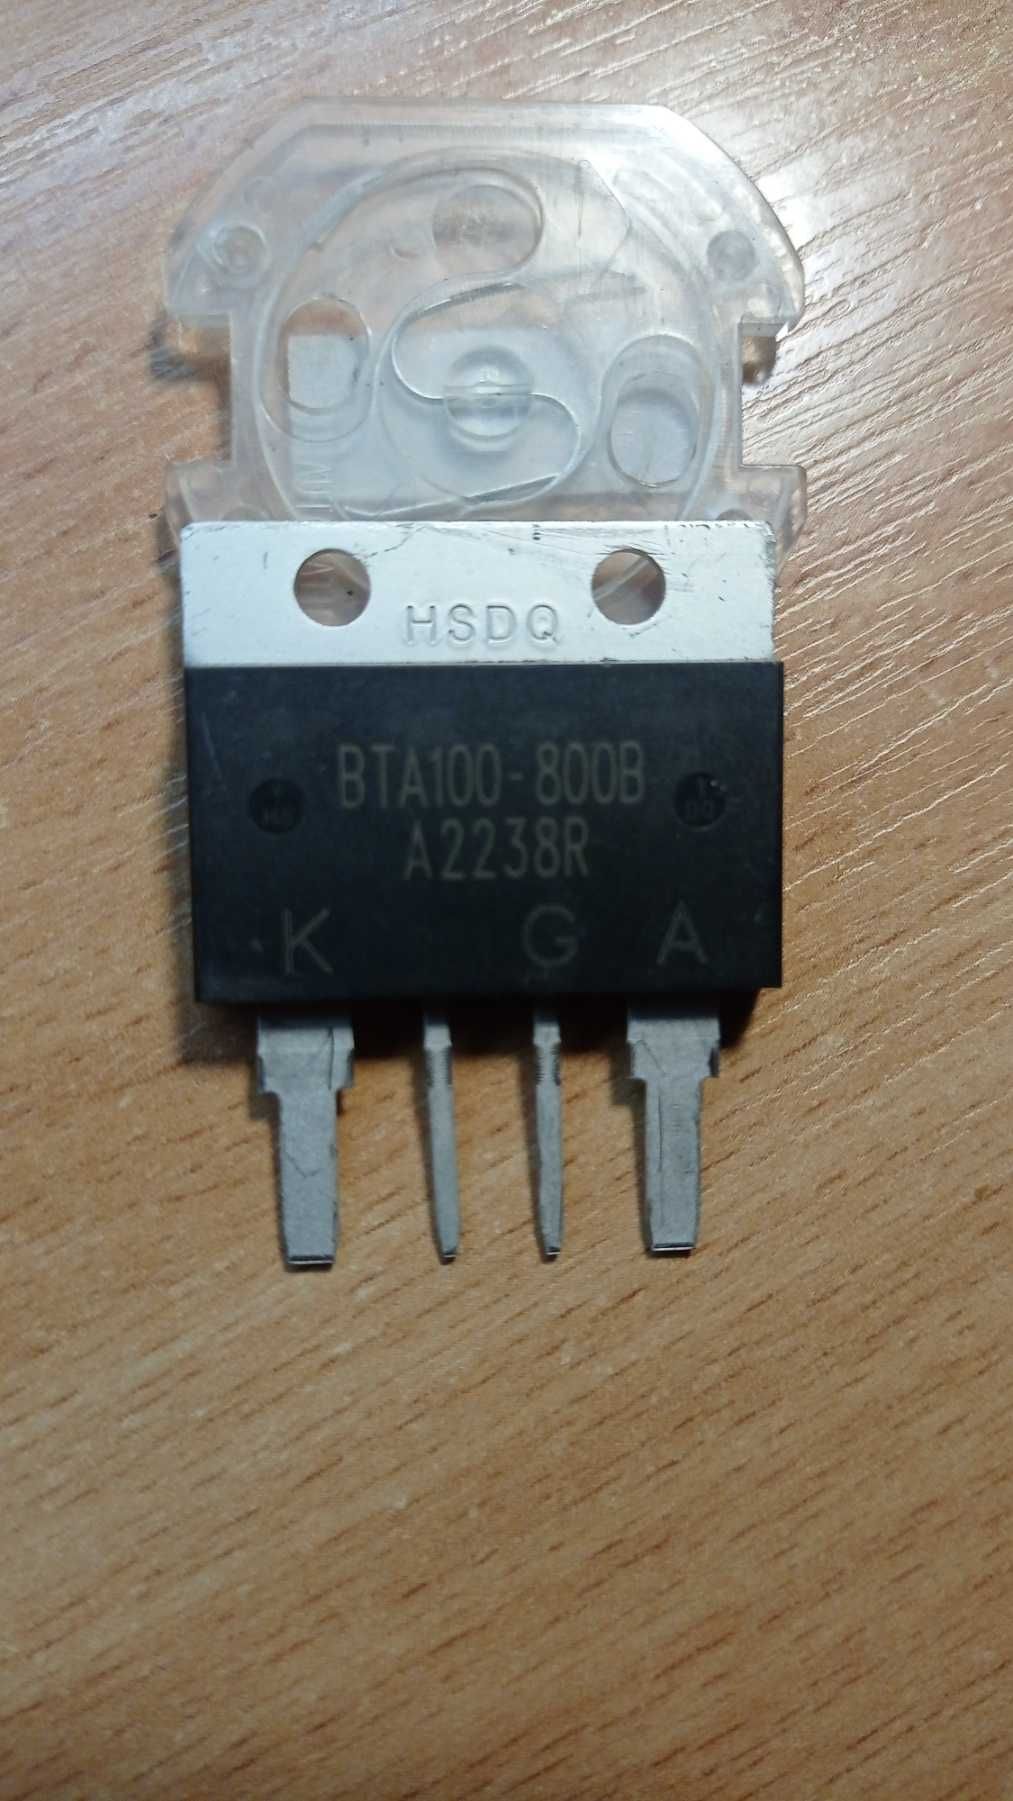 Симистор BTA100-800B 100А 800В.